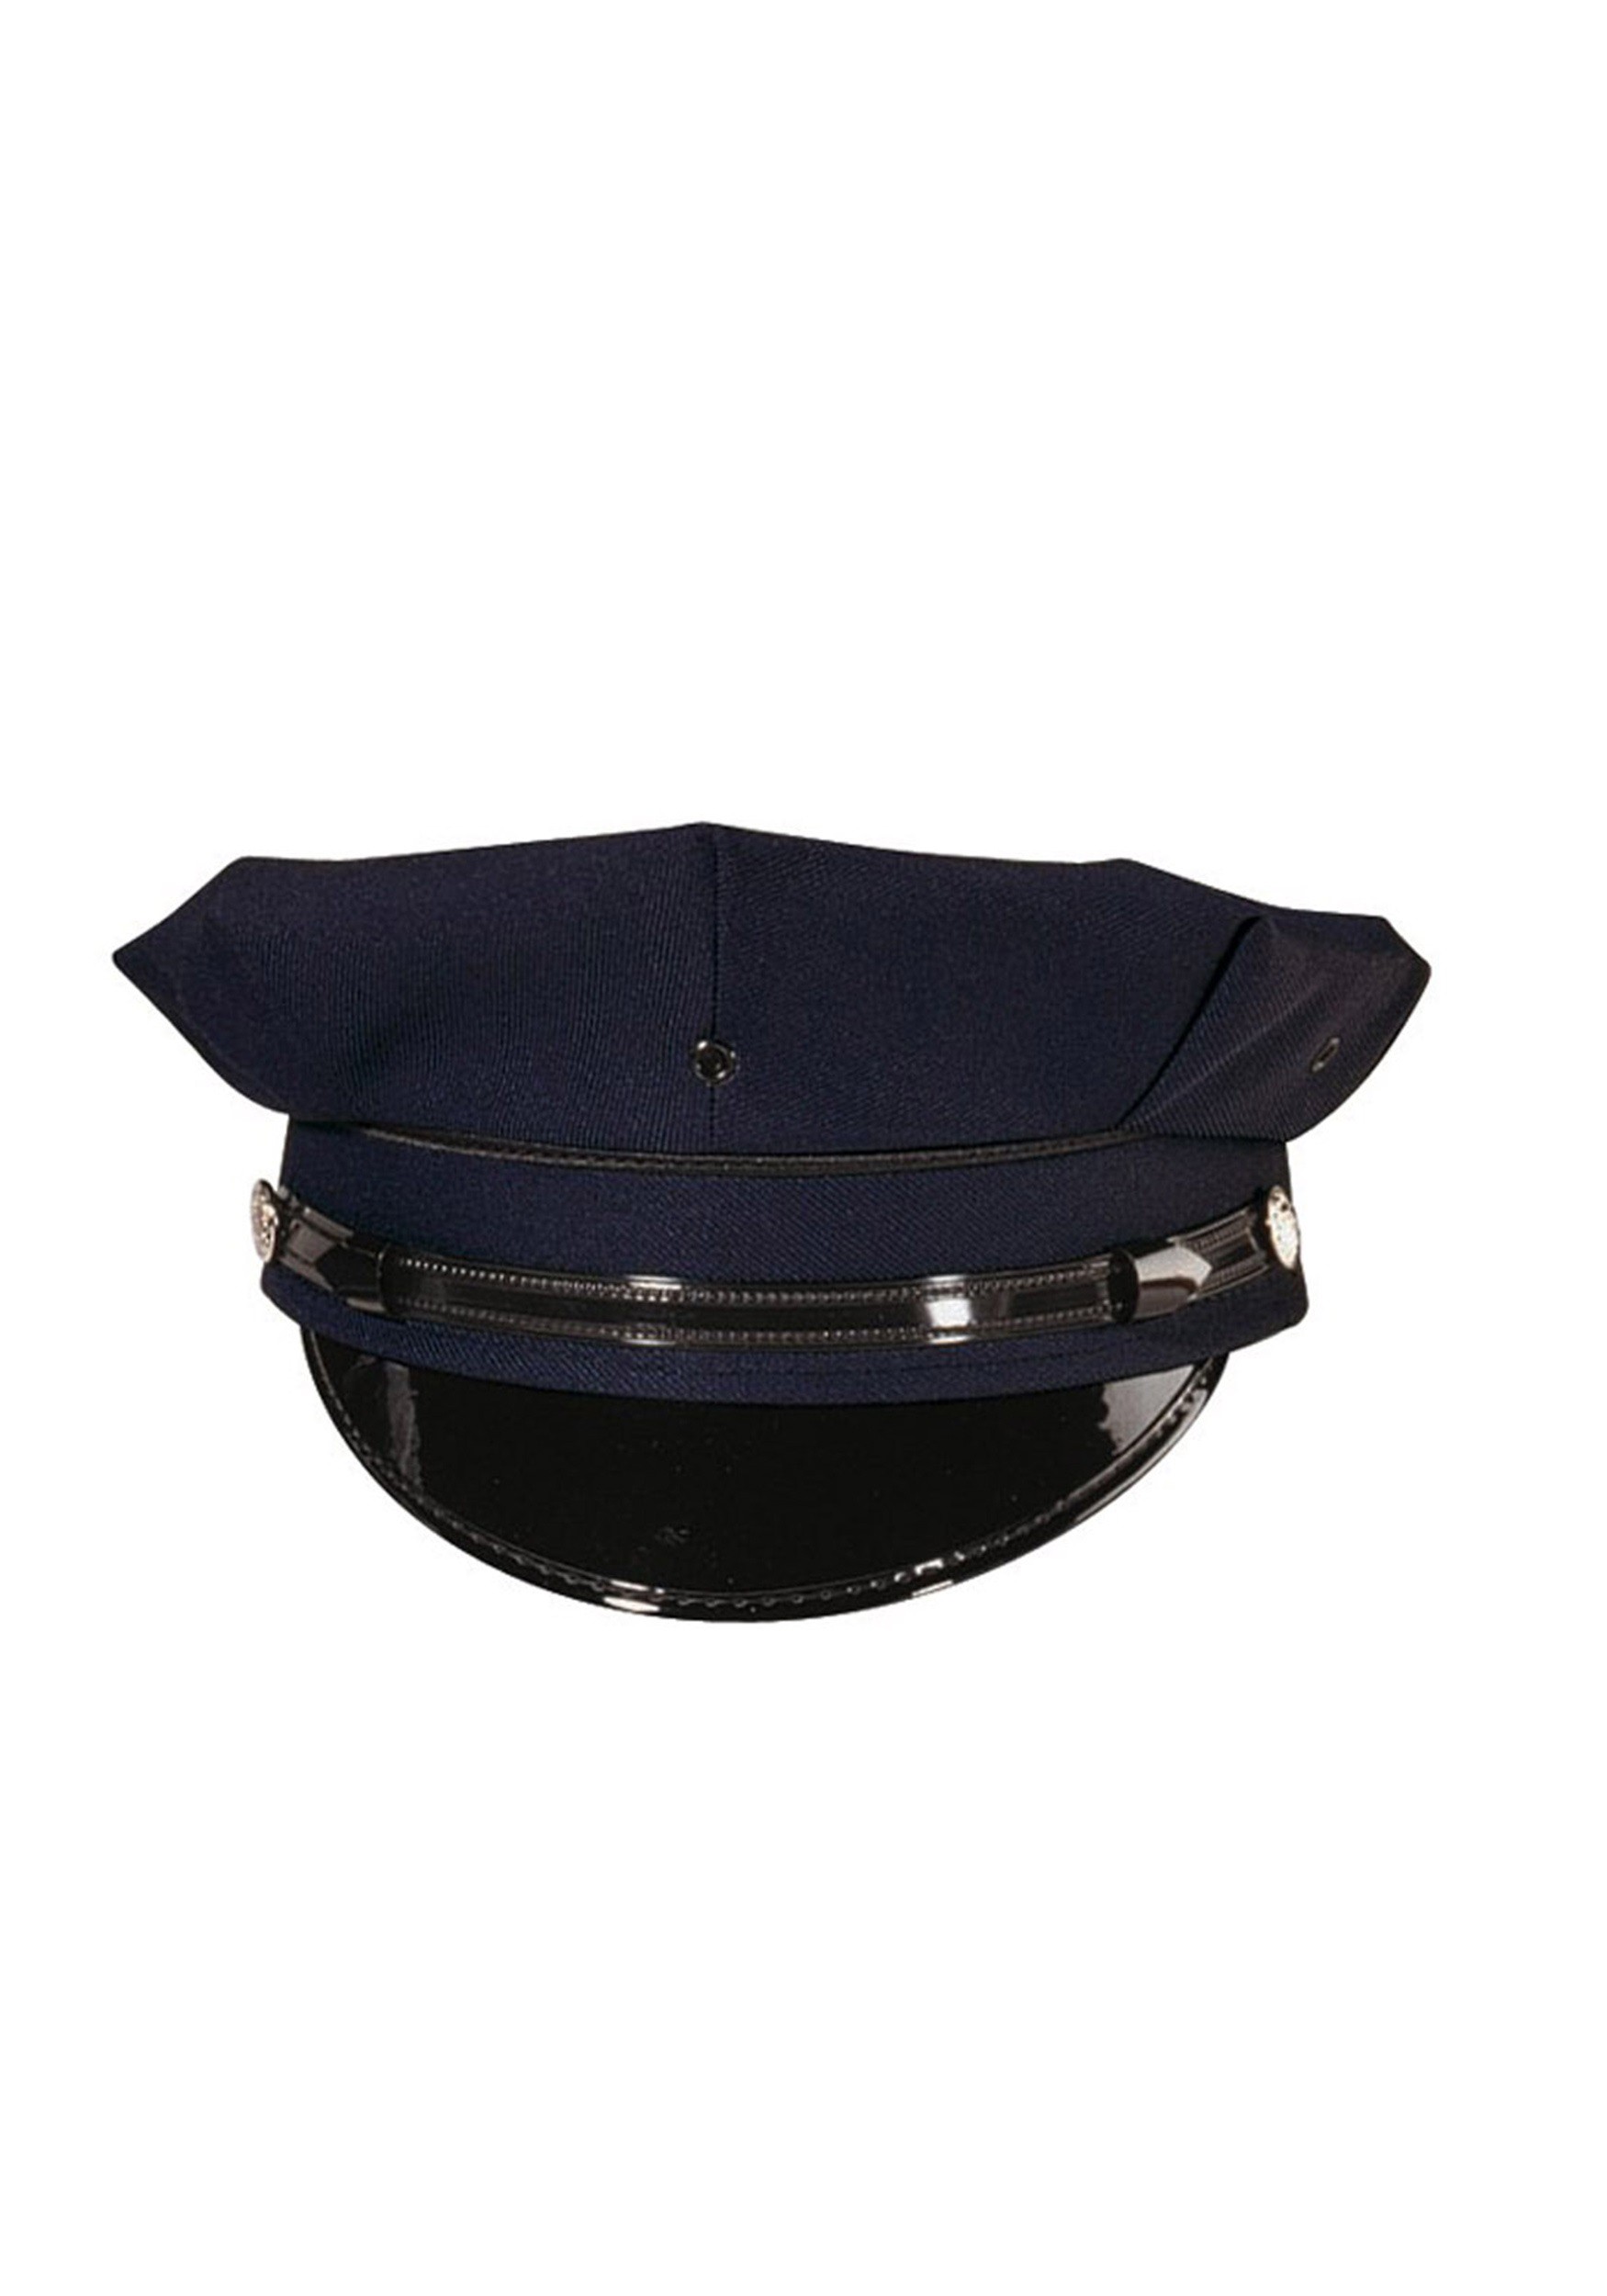 Deluxe 8 pt. Sombrero de vestuario de la policía azul marino para adultos Multicolor Colombia